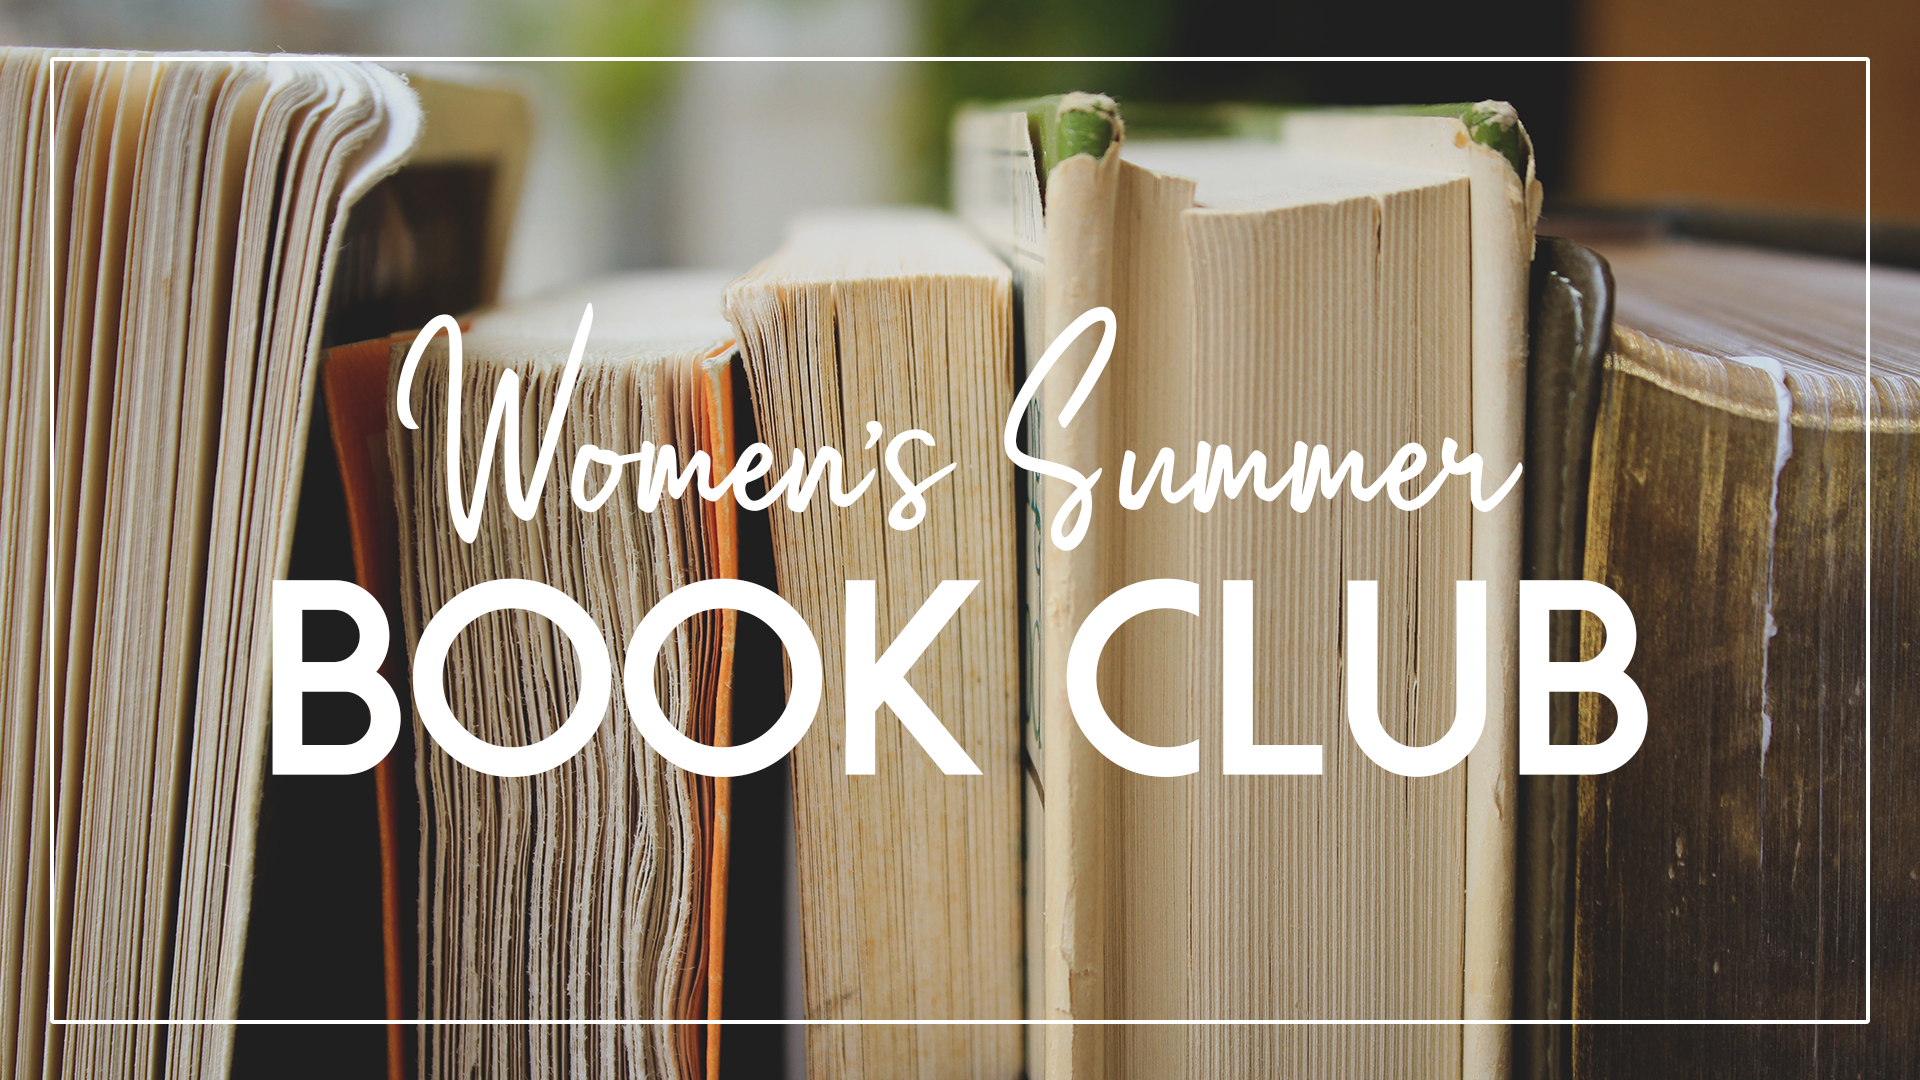 Women’s Summer Biography Book Club